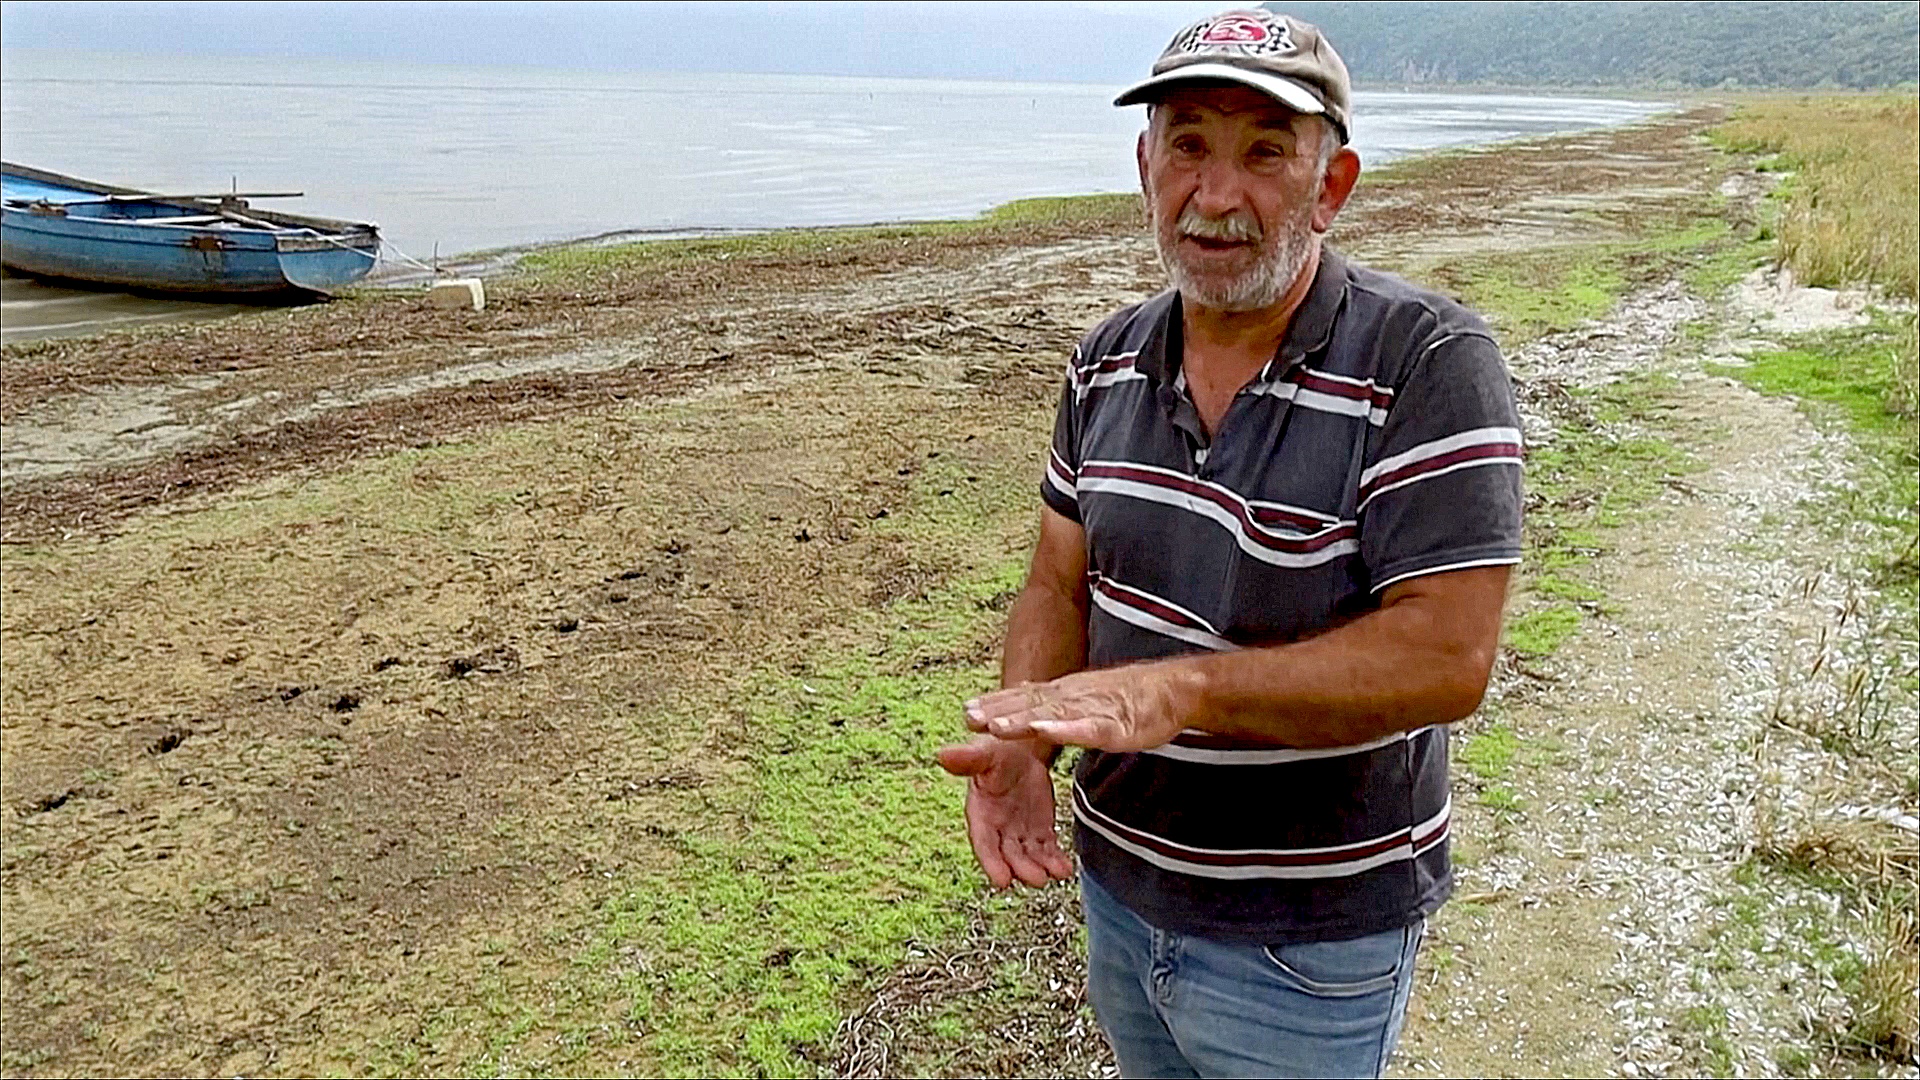 Македонское озеро Преспа уже потеряло половину своей воды